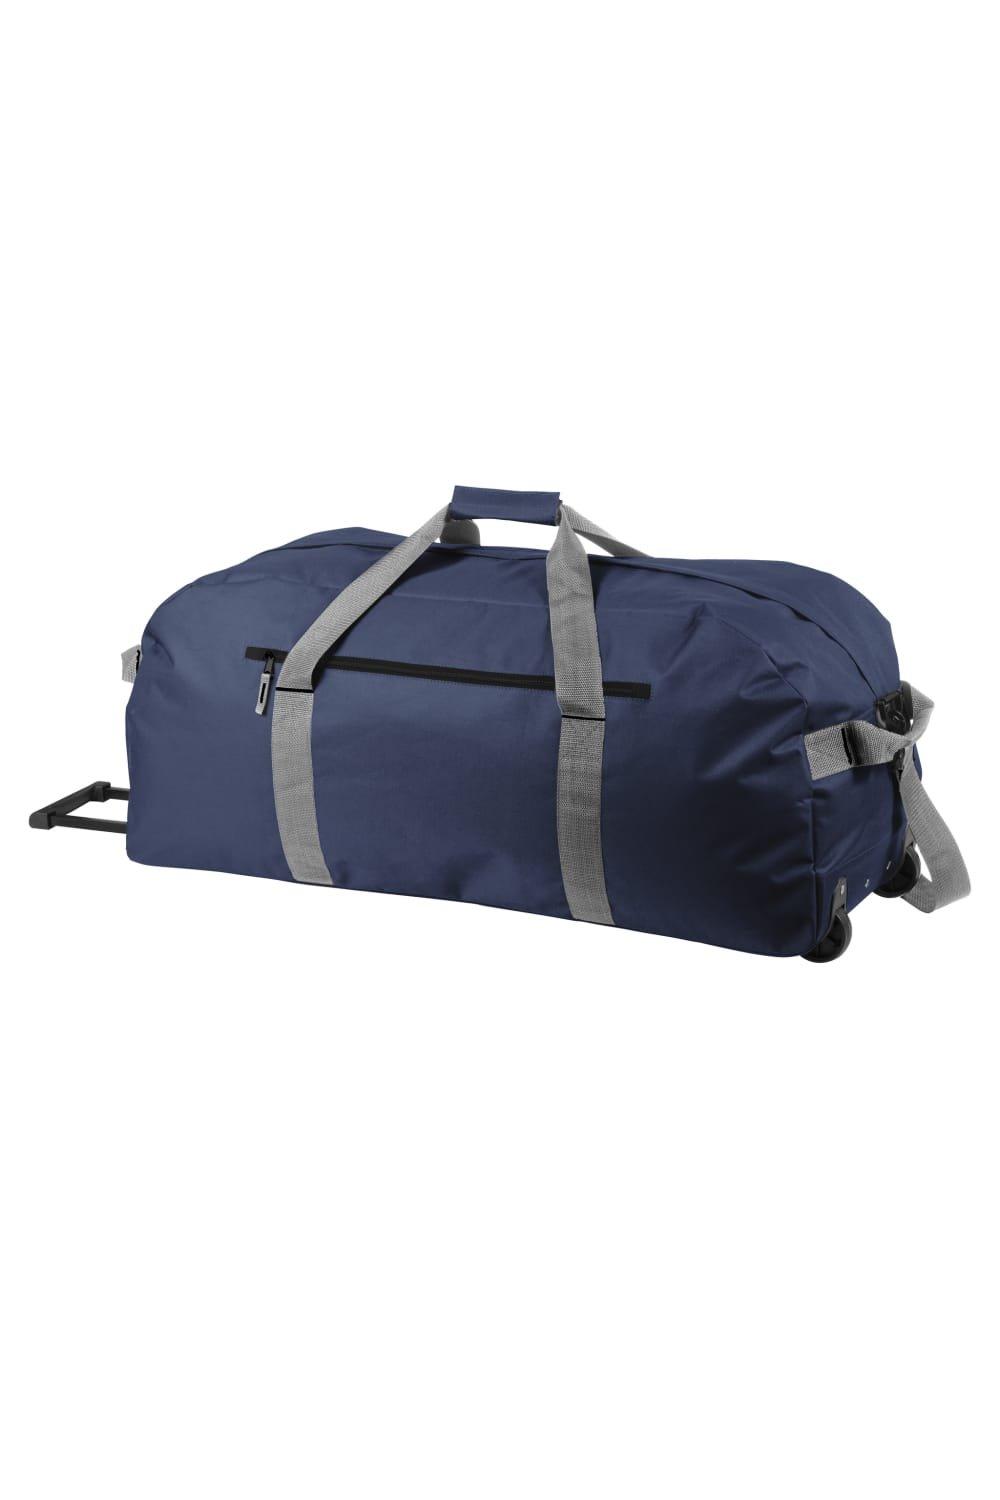 Дорожная сумка Vancouver Trolley Bullet, темно-синий сумка тележка тыловик 40 л мультиколор